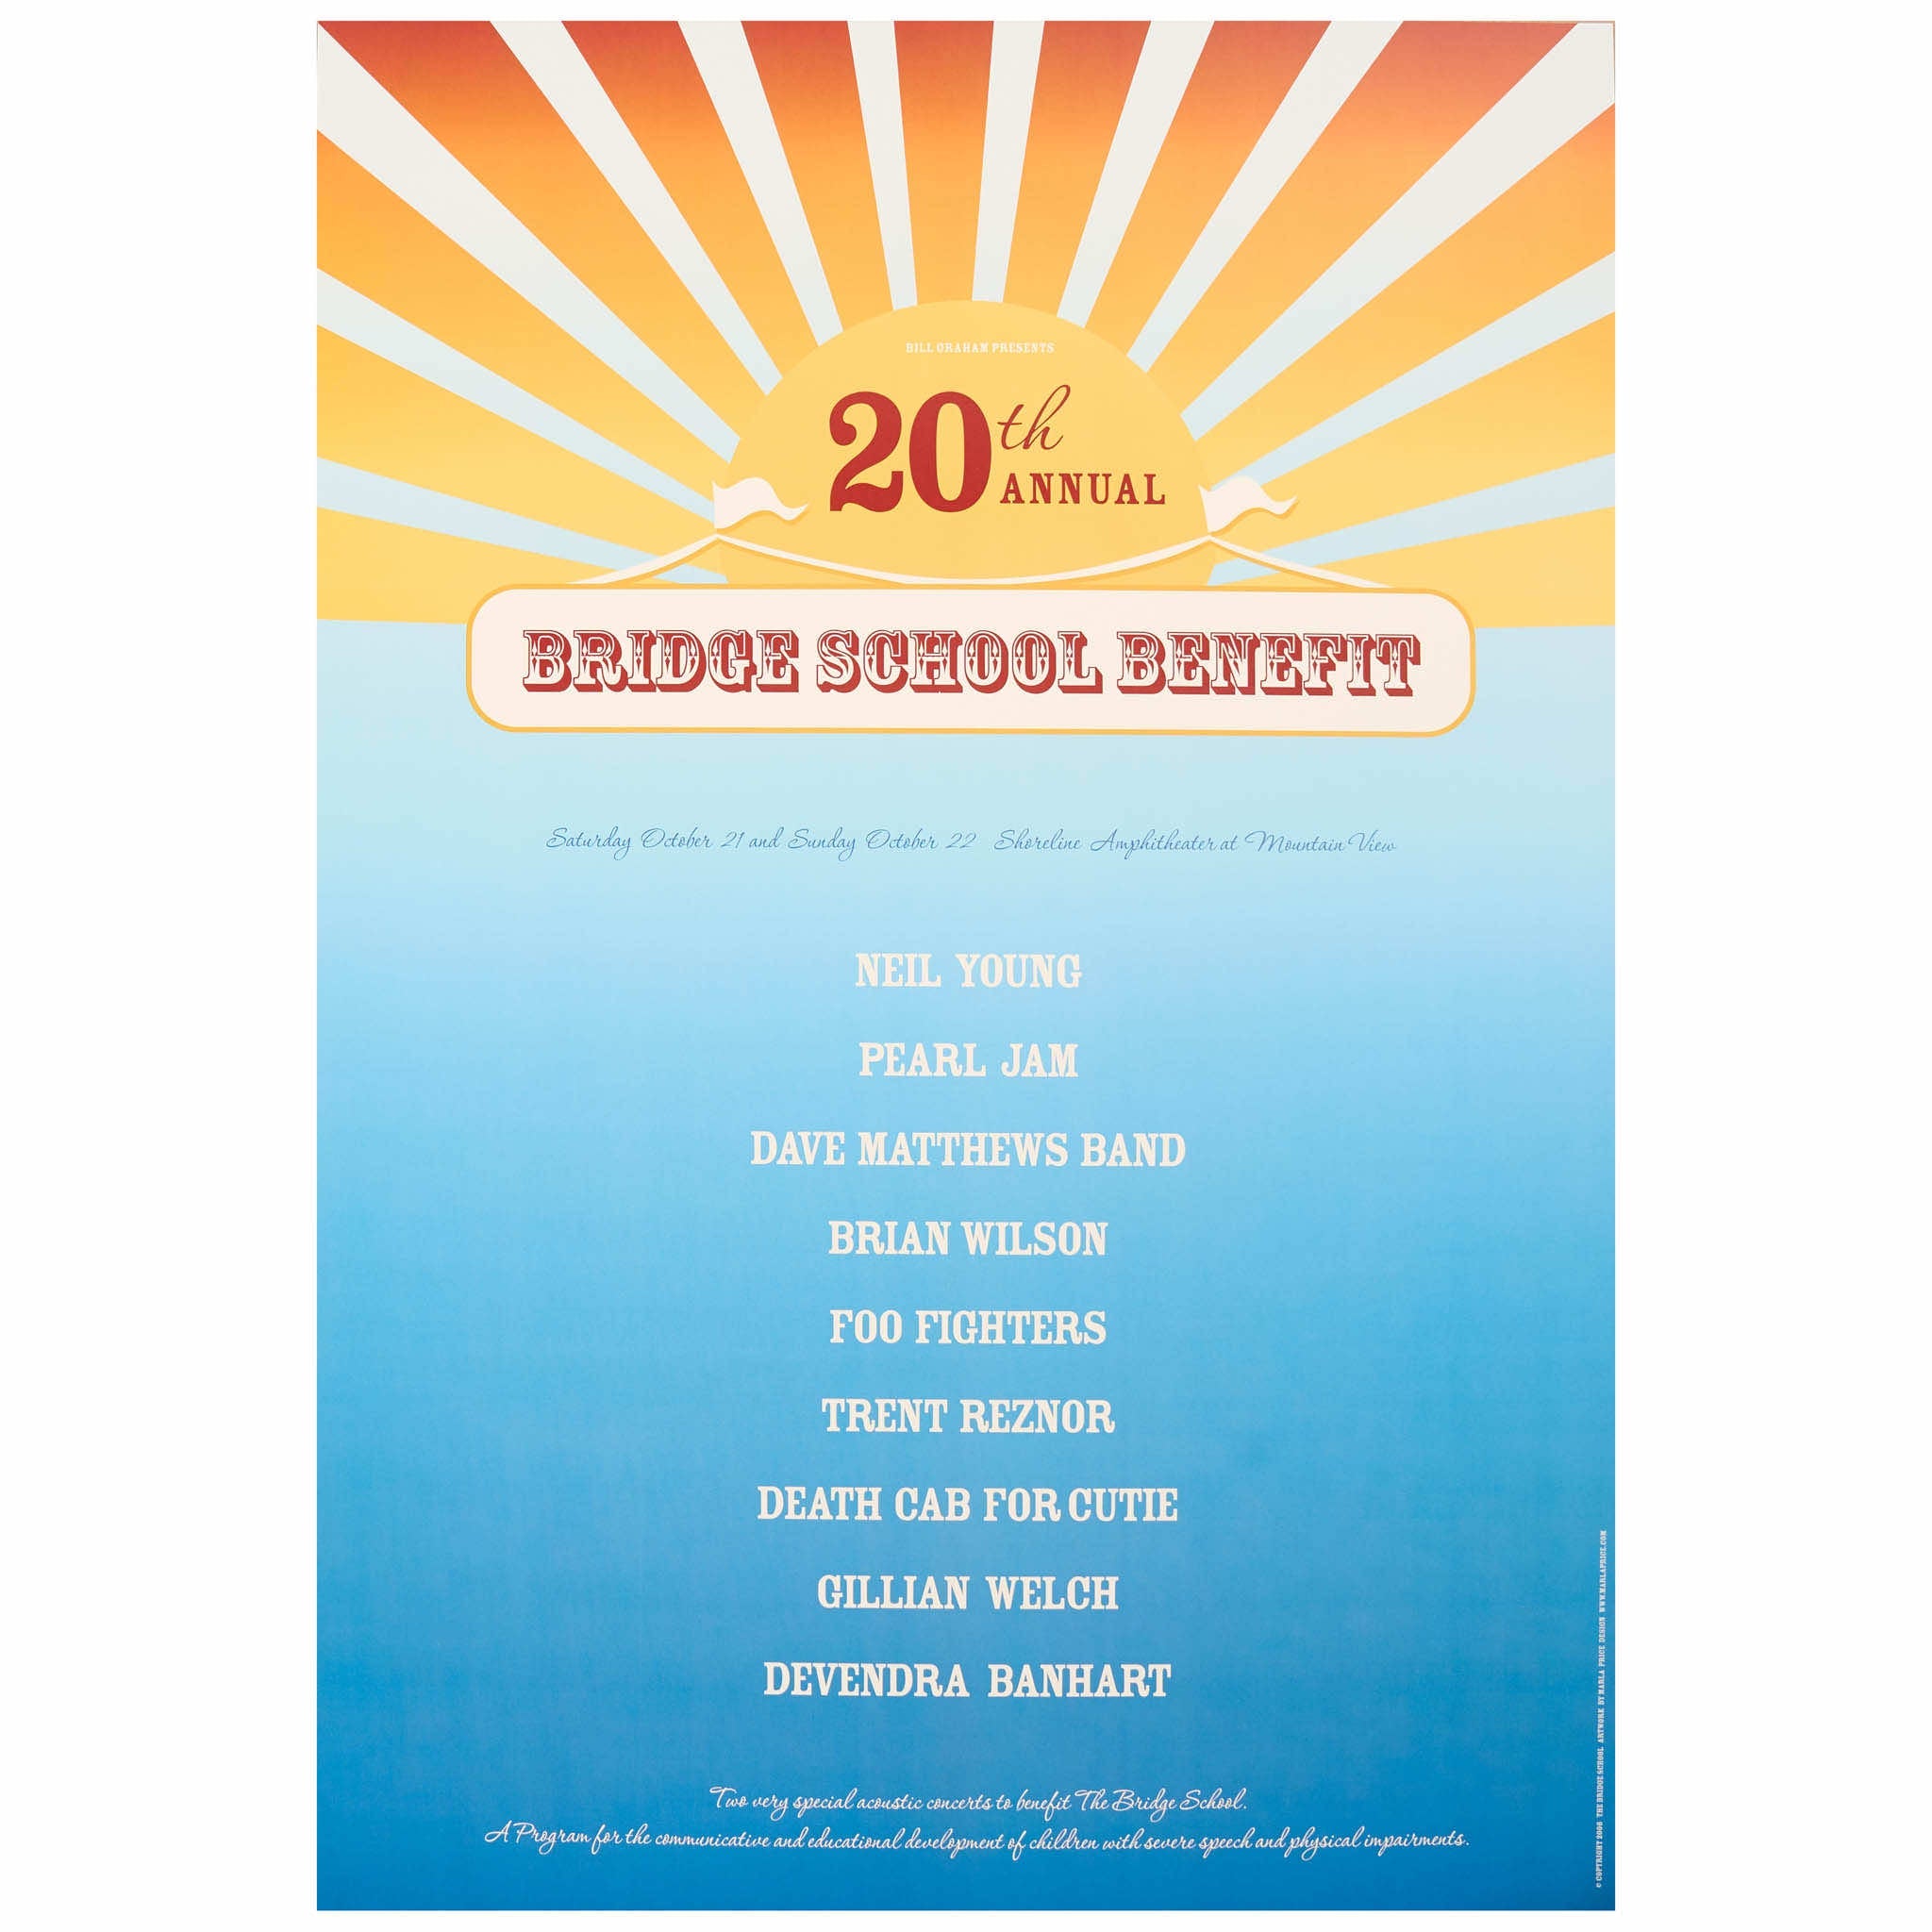 2006 - 20th Bridge School Benefit Concert poster